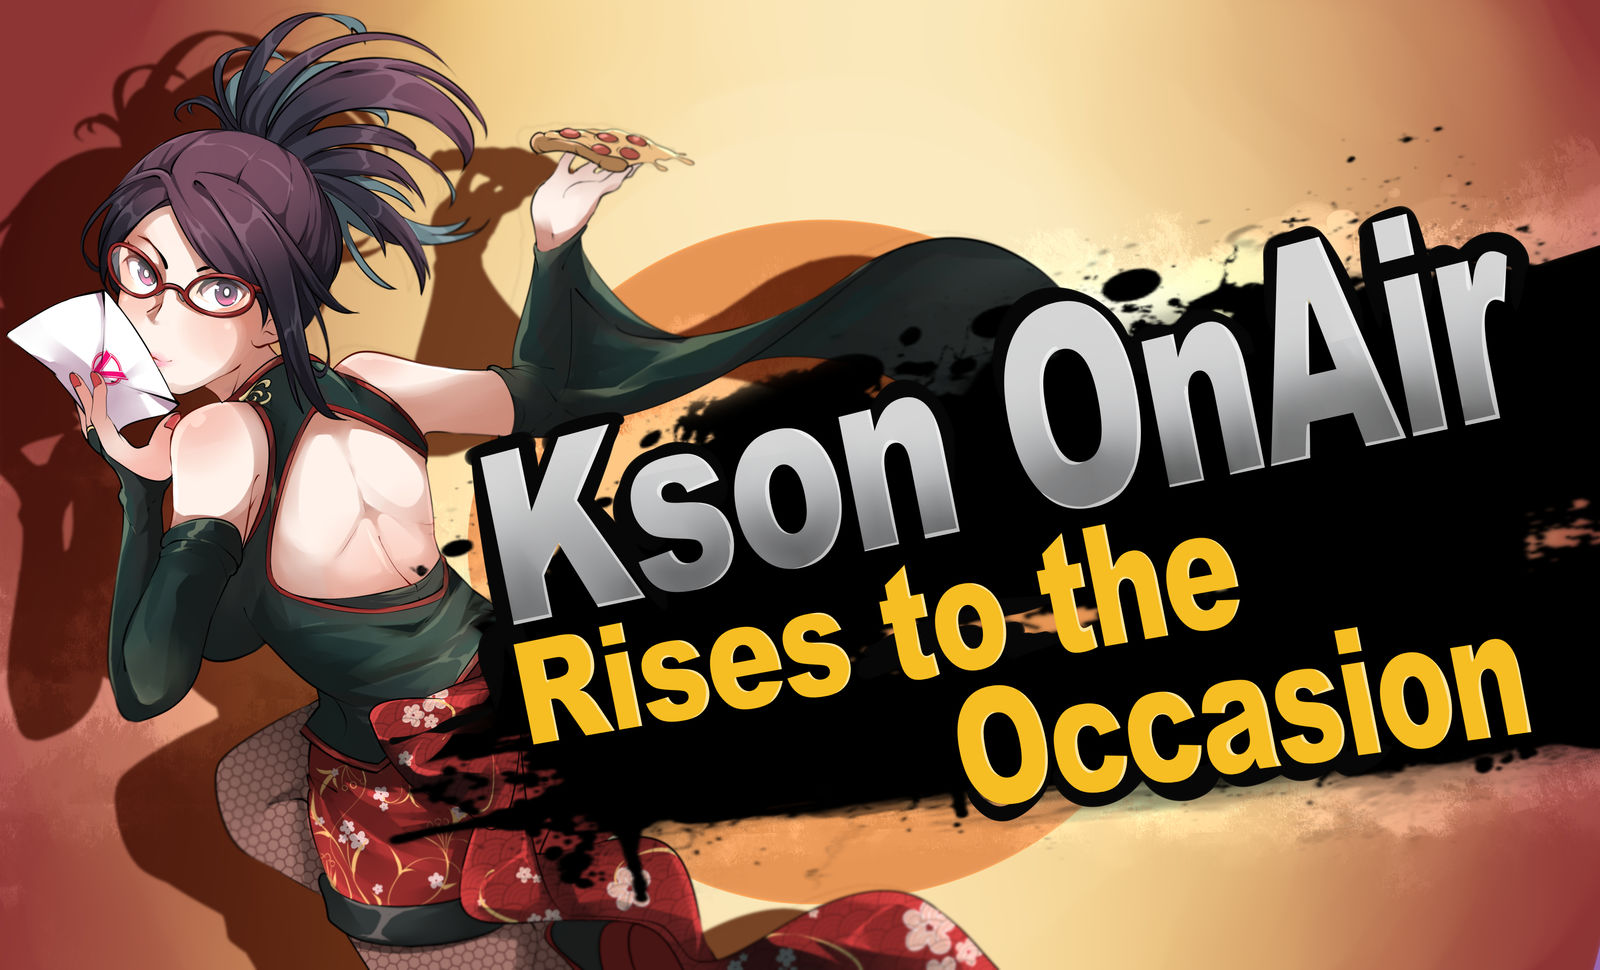 Kson OnAir joins Vshojo!